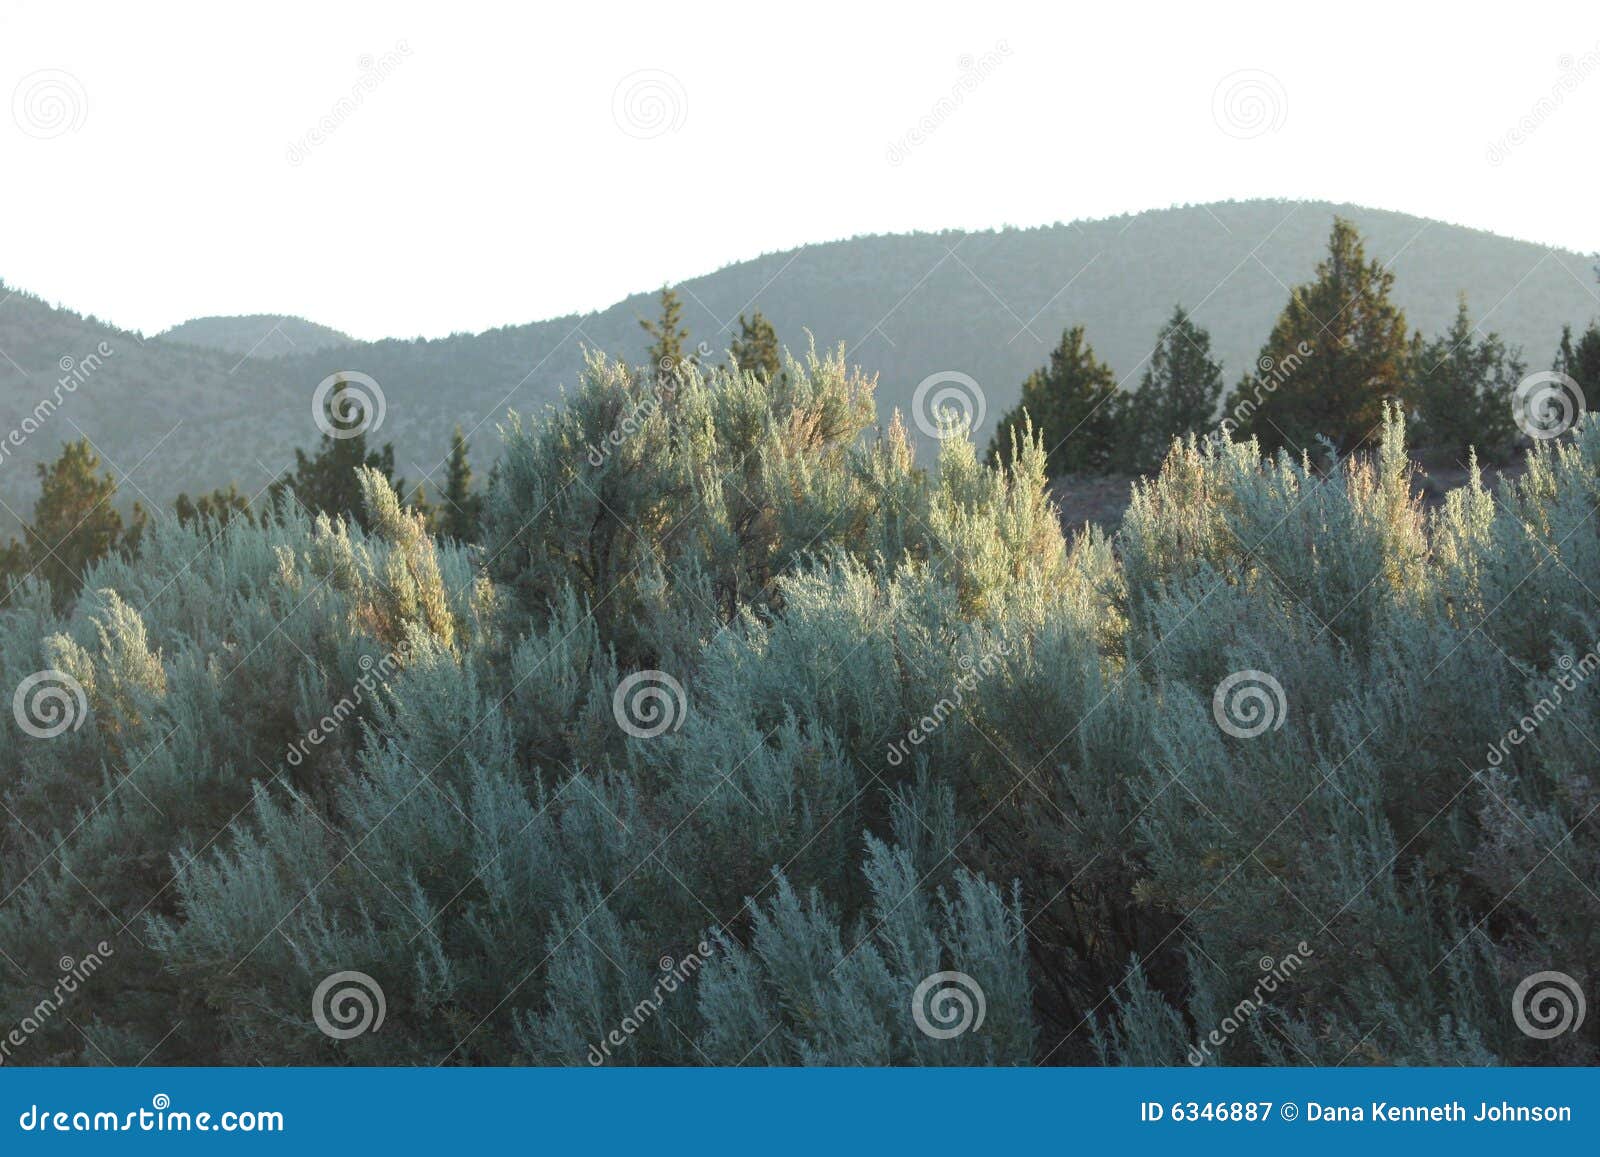 sagebrush and juniper near powell buttes